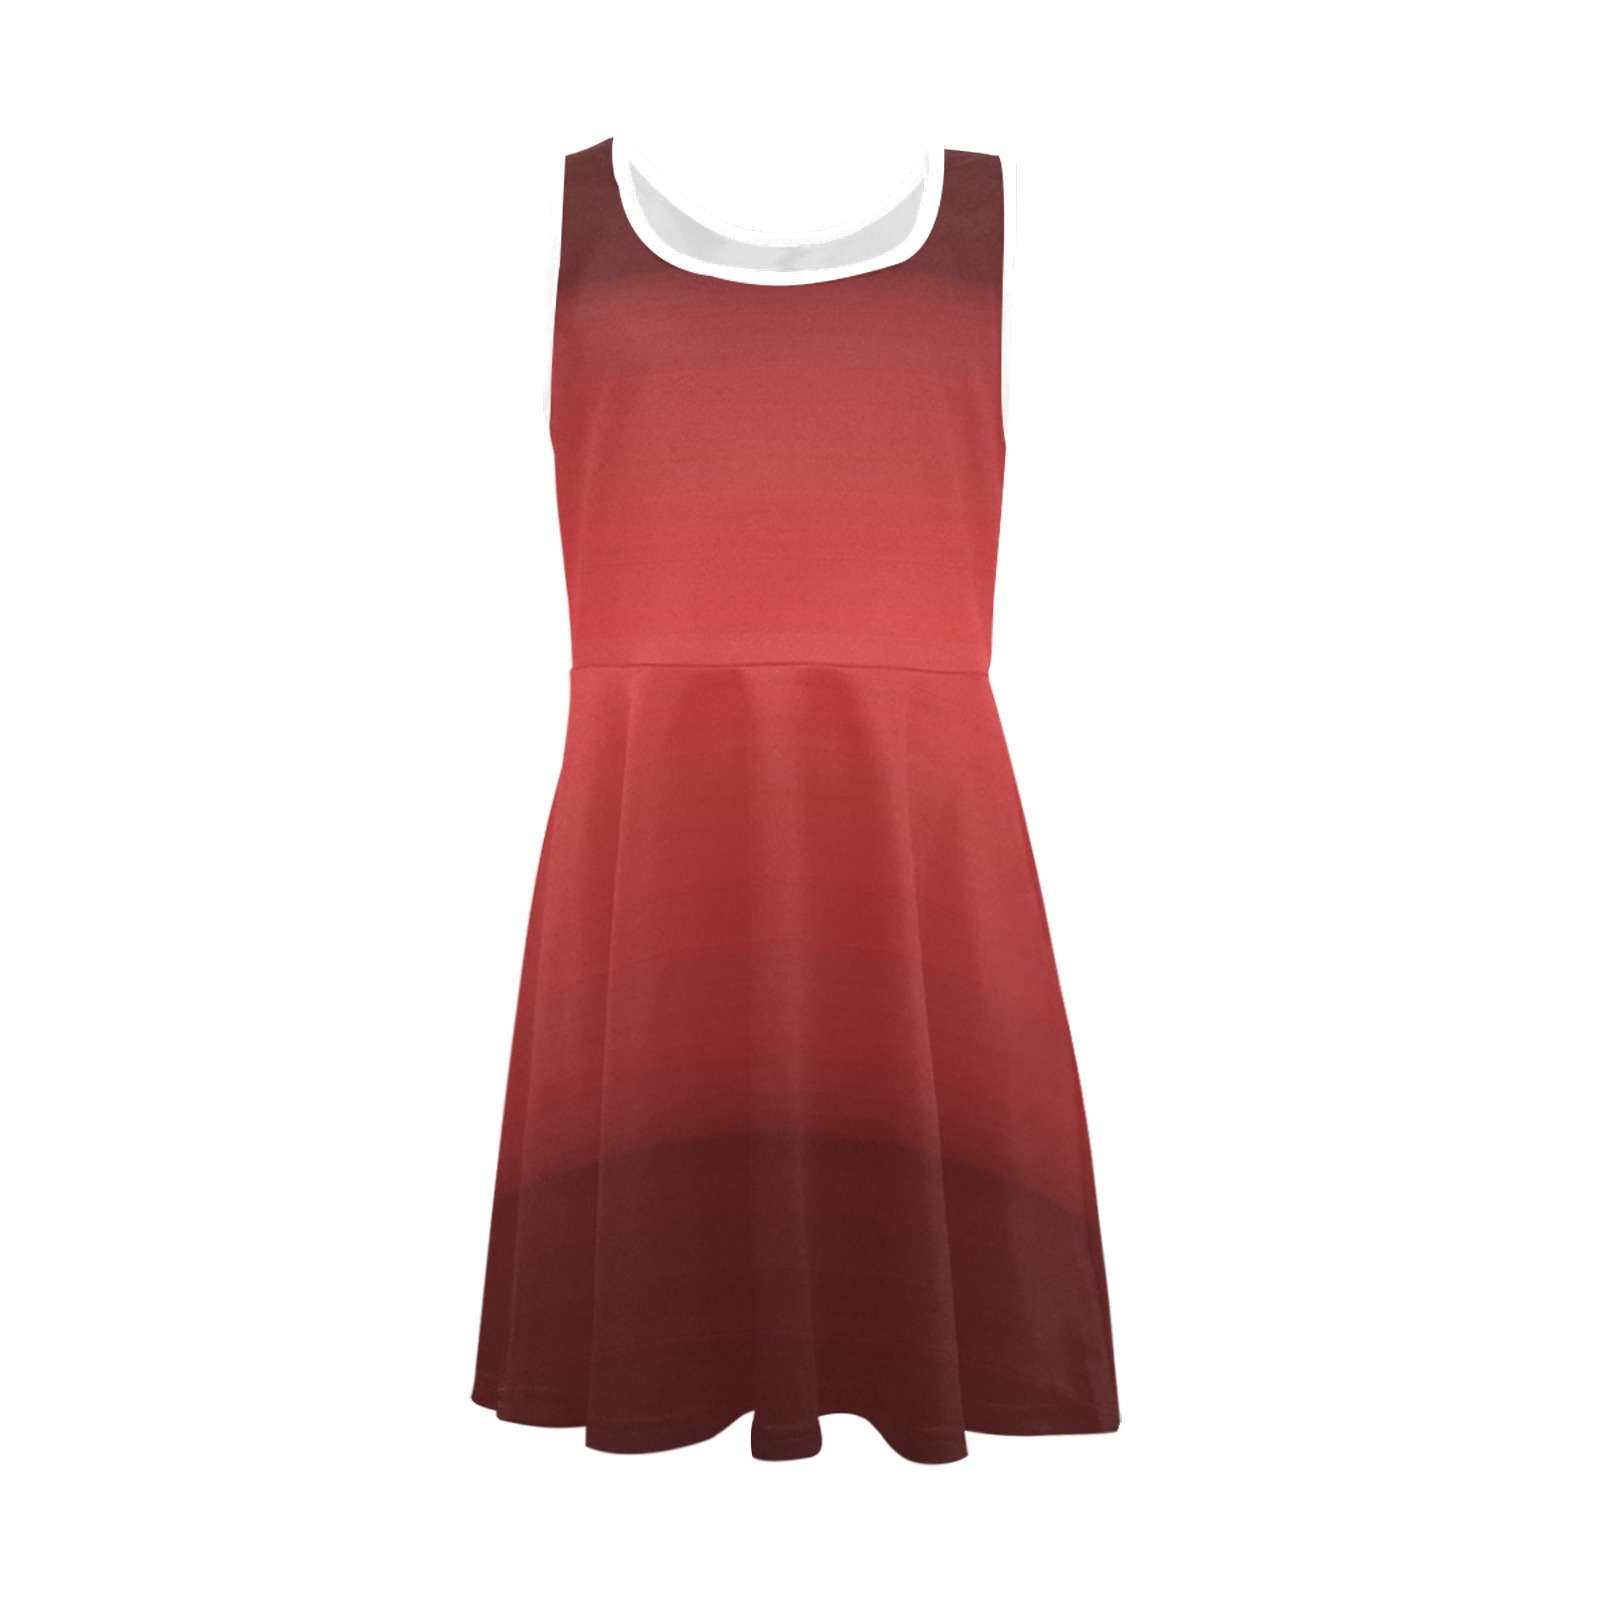 orn red Girls' Sleeveless Sundress (Model D56)